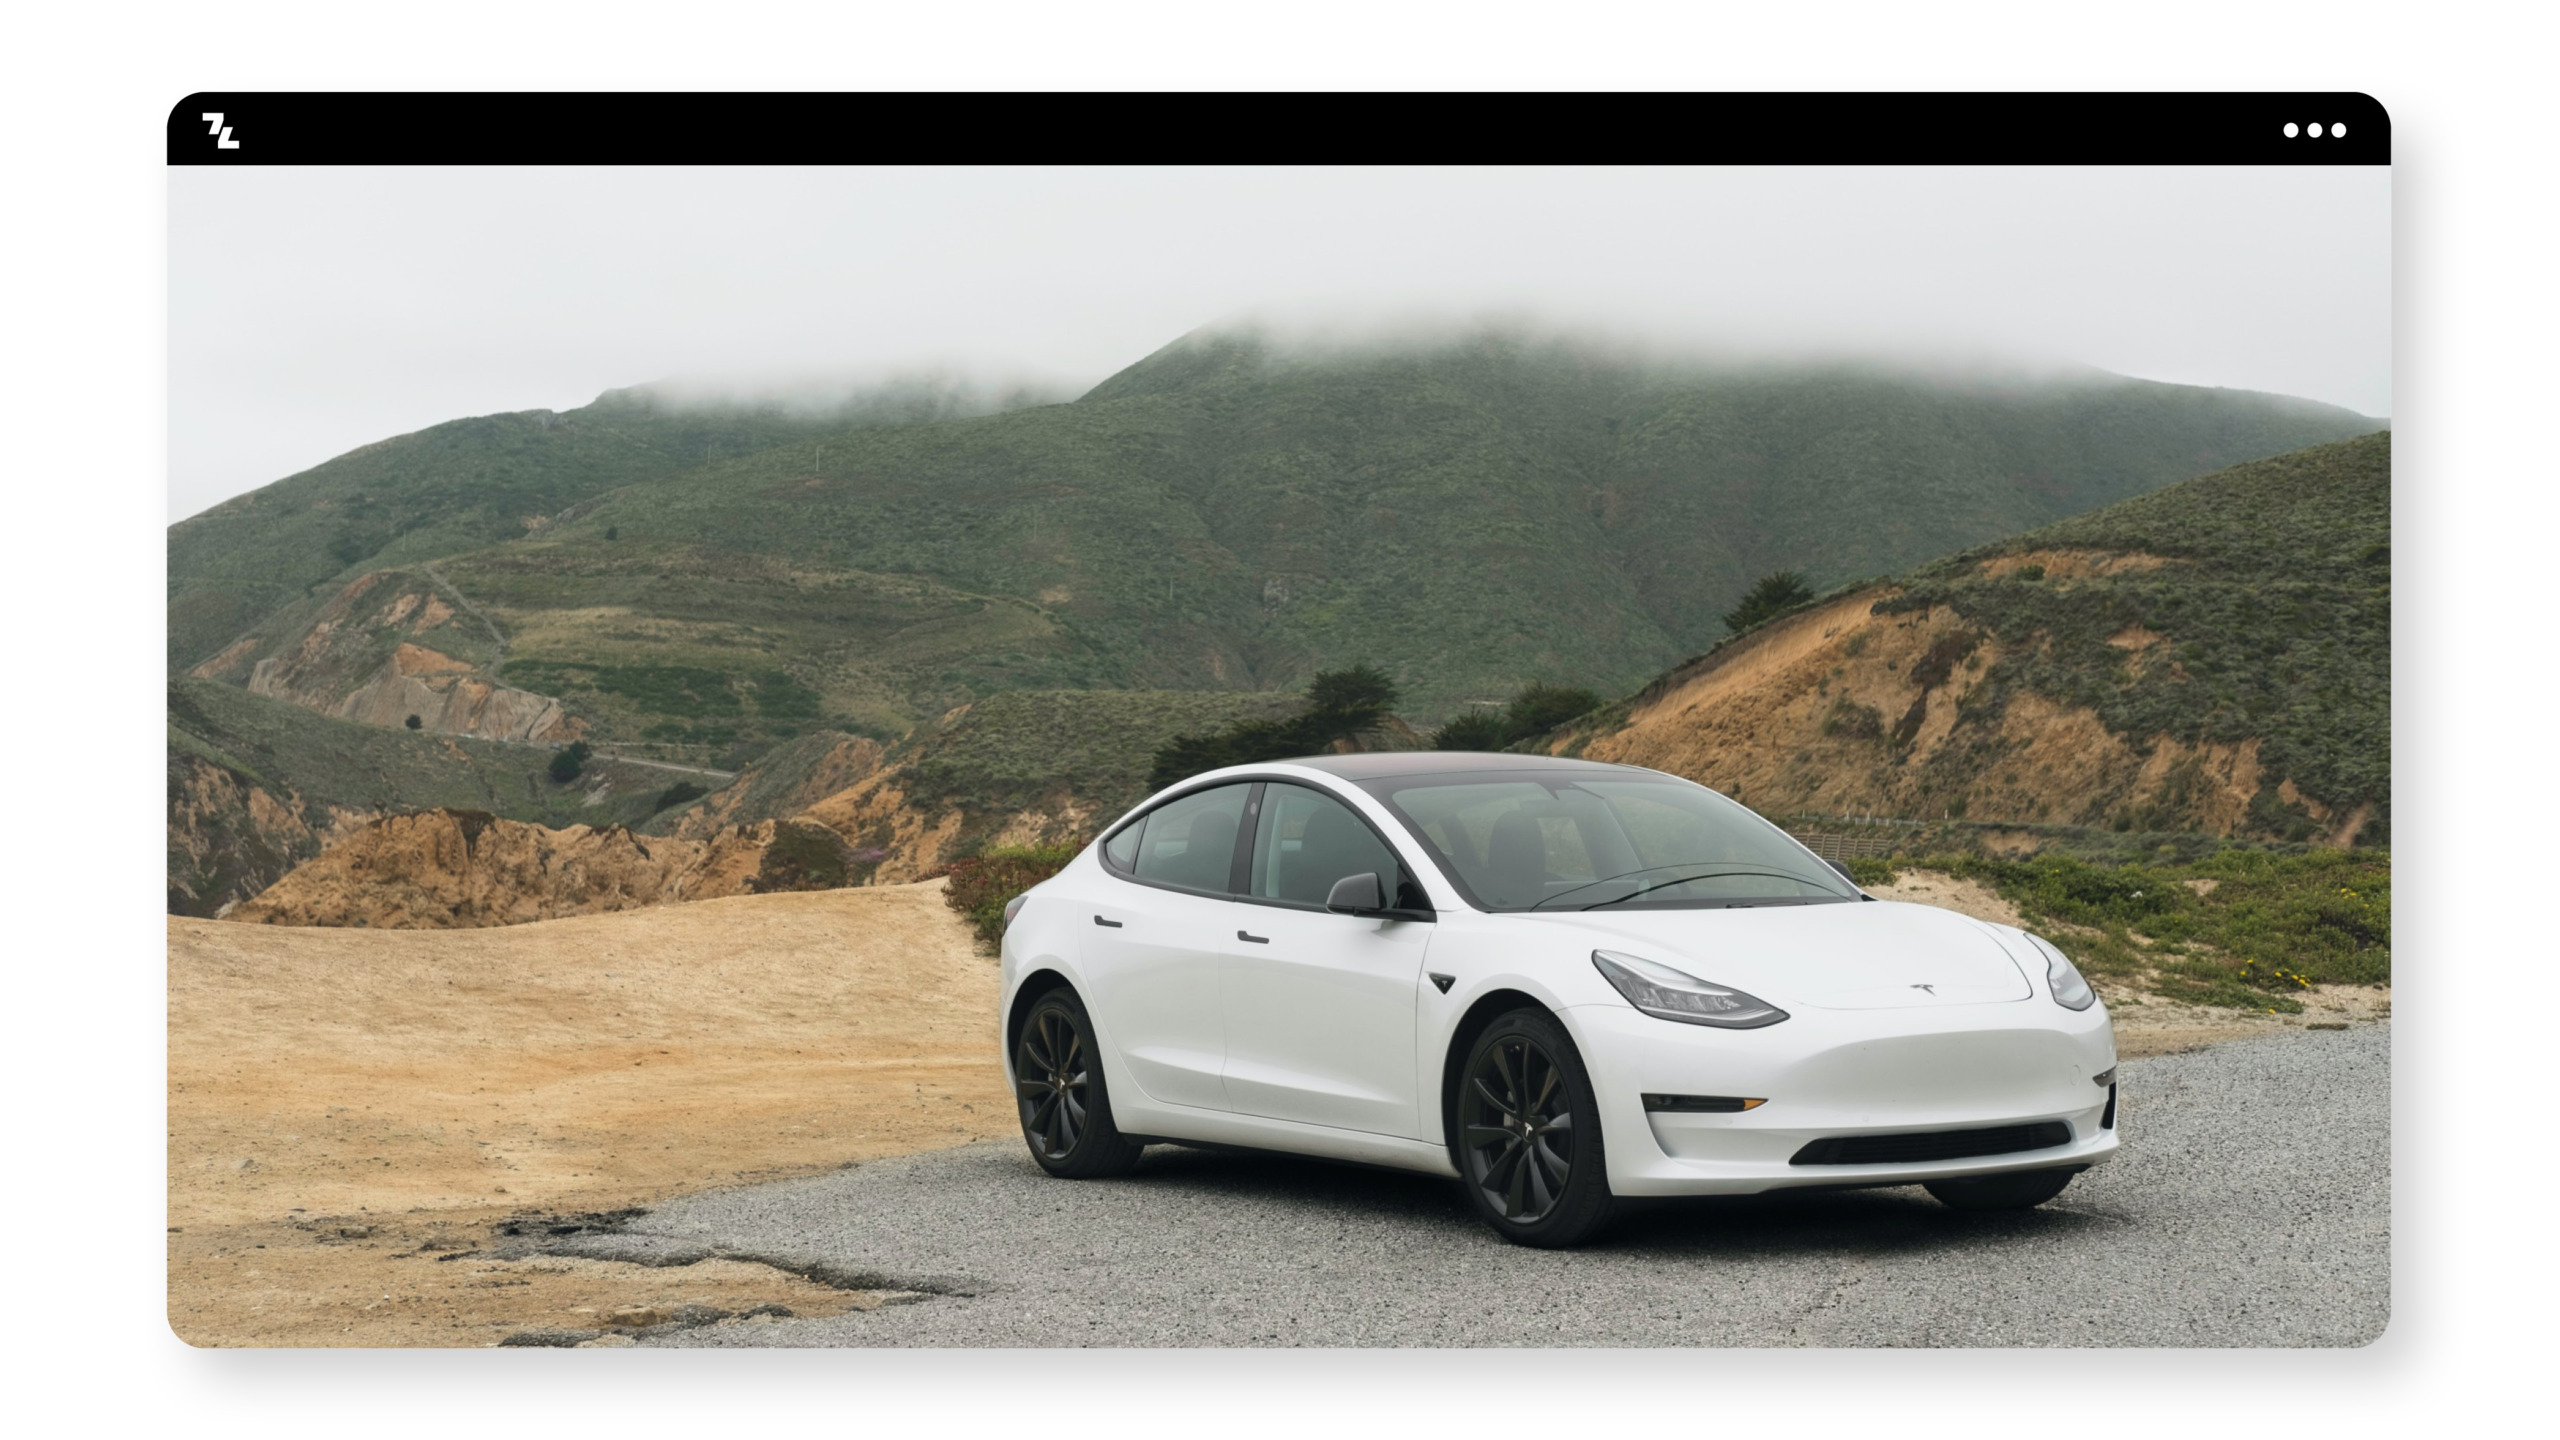 Ein weißes Tesla-Modell parkt auf einer Bergstraße.